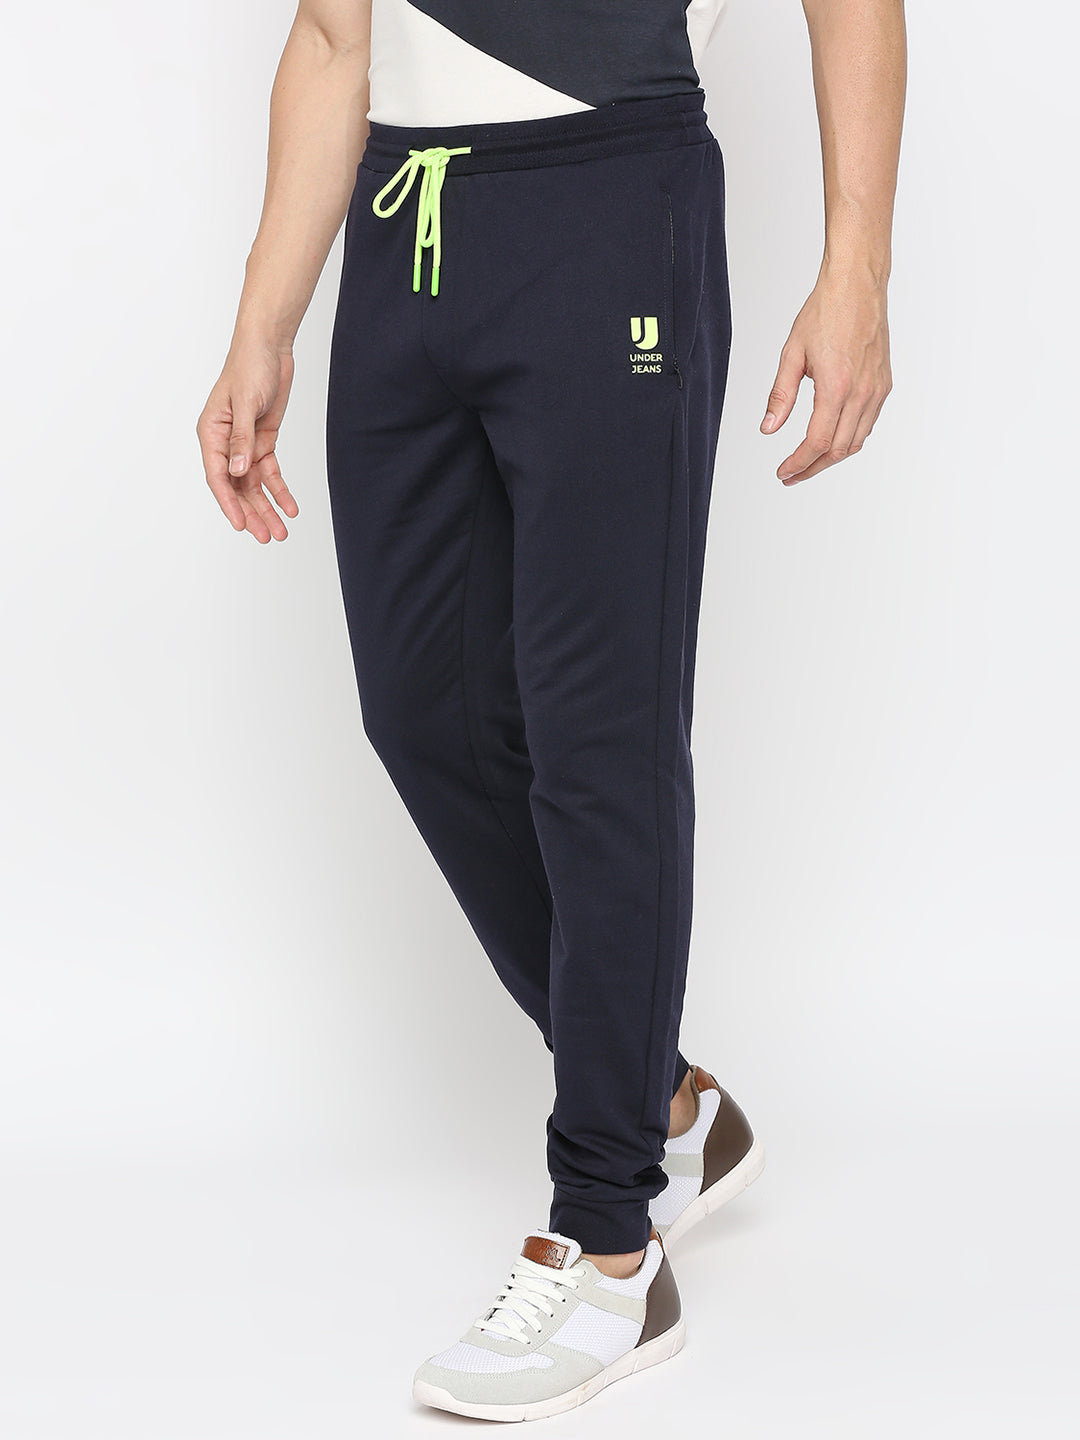 Men Premium Cotton Blend Navy Trackpants - UnderJeans by Spykar